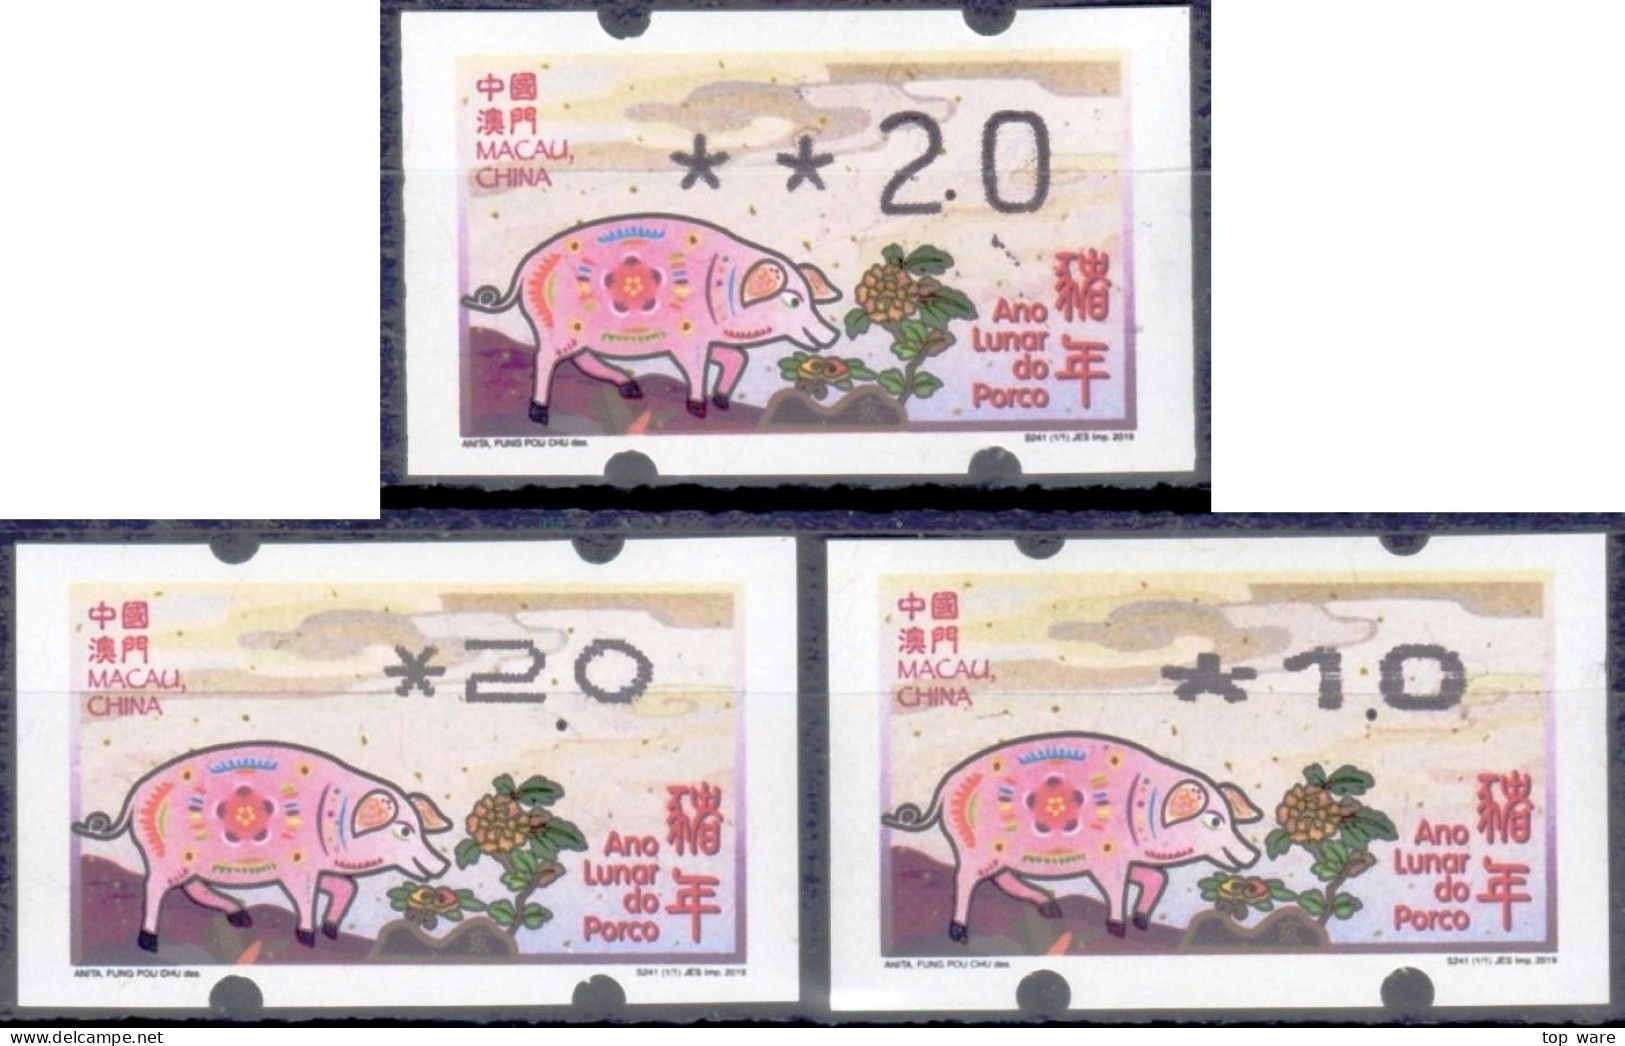 2019 Chine Macau ATM Stamps Année Du Cochon Pig / Tous Types D'imprimantes Klussendorf Nagler Newvision Automatenmarken - Distributeurs